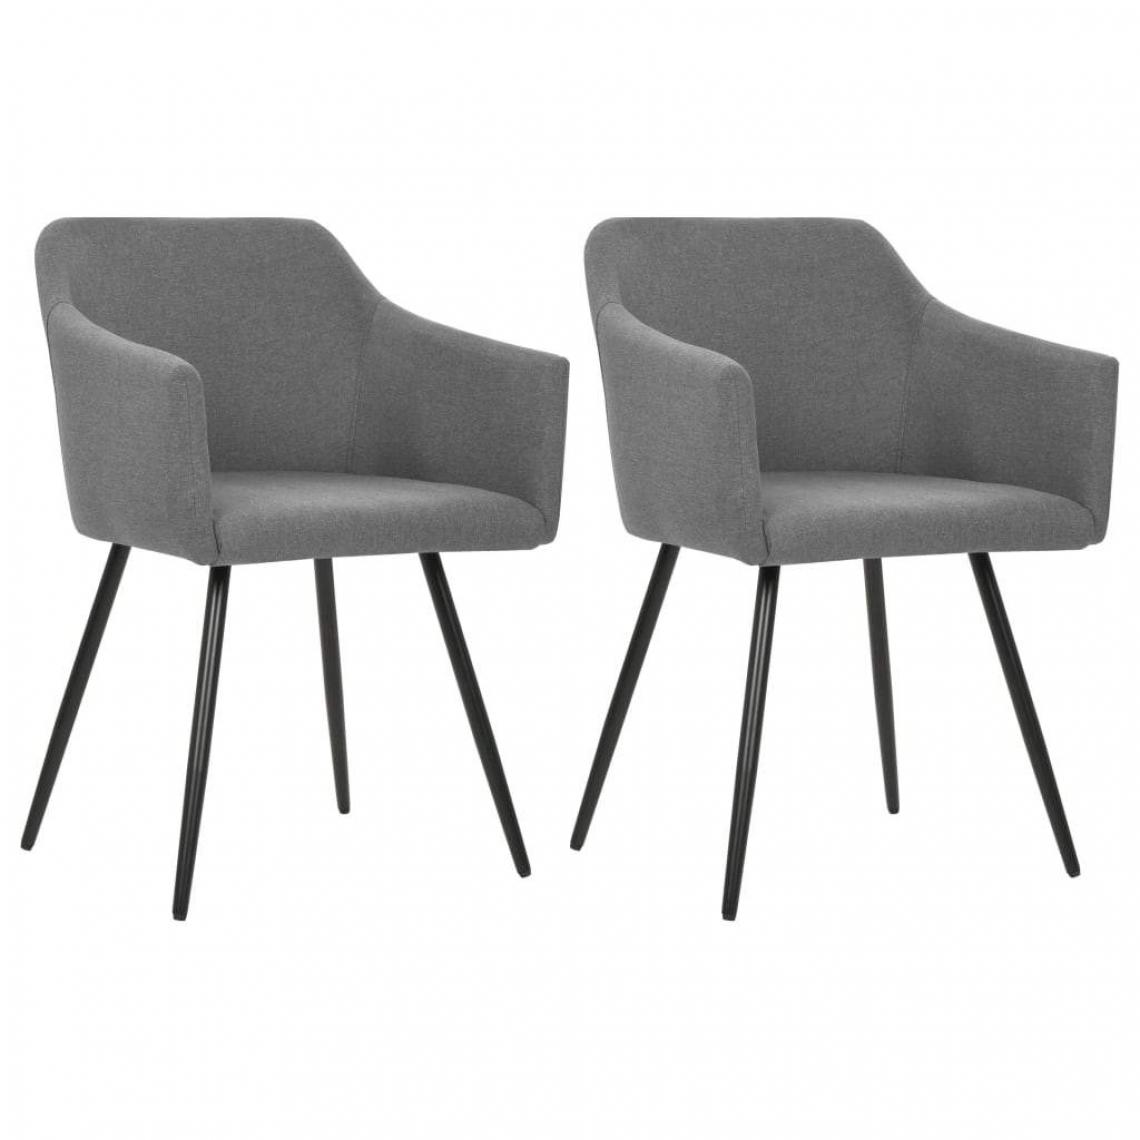 Decoshop26 - Lot de 2 chaises de salle à manger cuisine style moderne tissu gris clair CDS020498 - Chaises